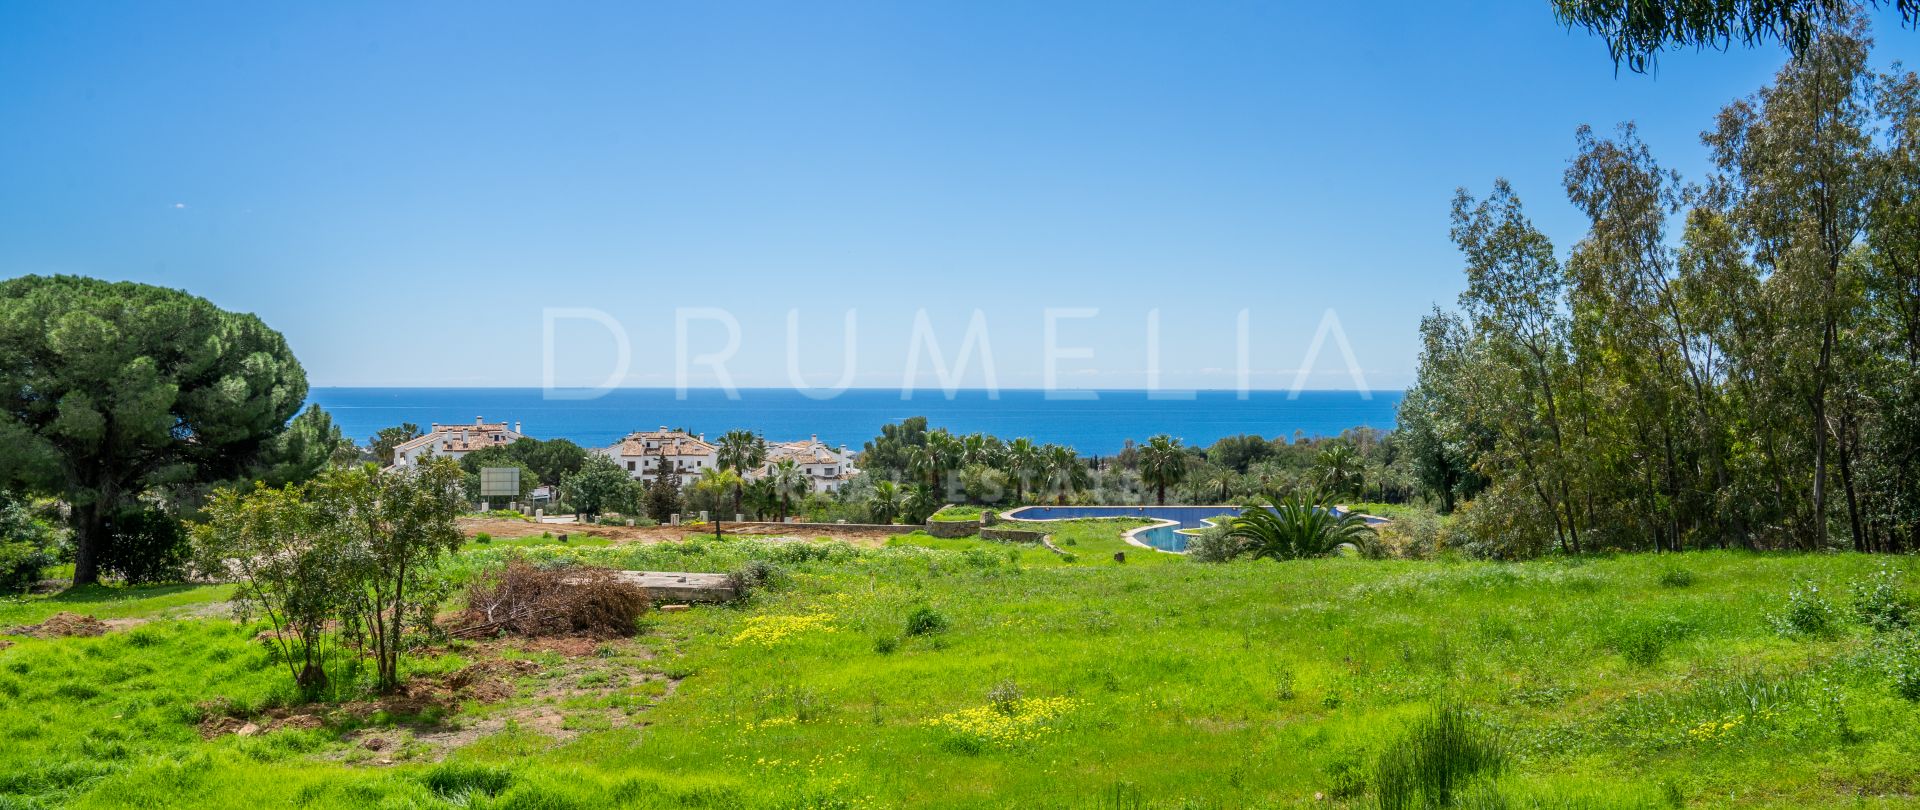 Ceibos 1 - Exclusief groot stuk grond met zeezicht in Golden Mile, Marbella